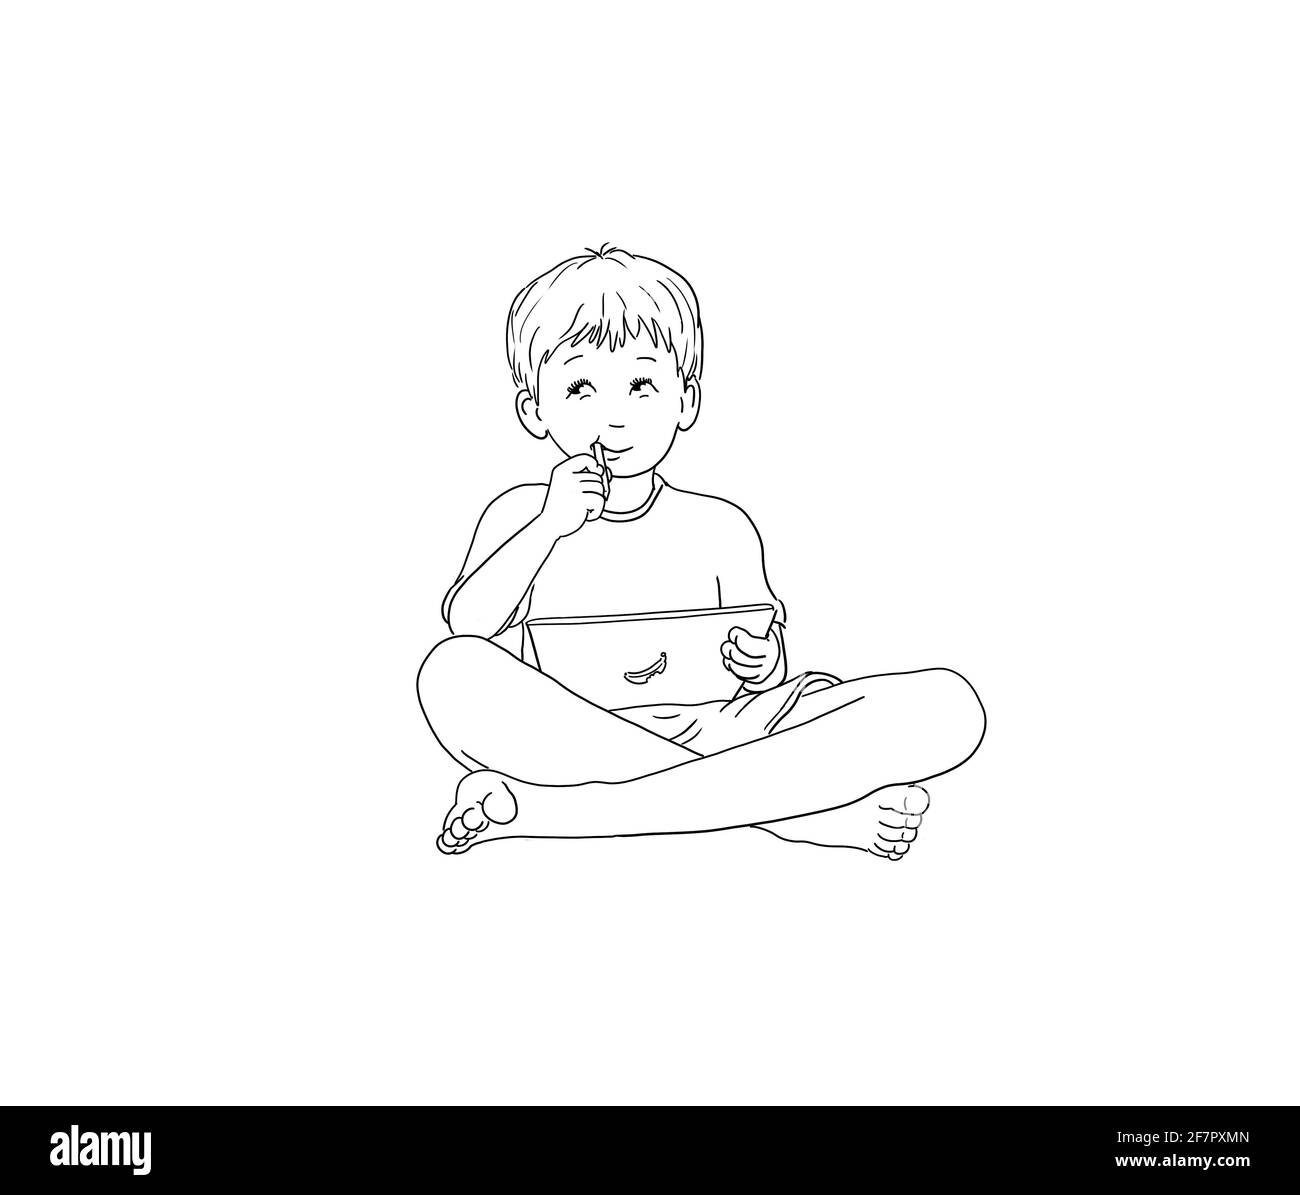 apprentissage numérique, école à la maison, étudiant garçon assis confortablement pieds nus avec une tablette et un stylo, rester à la maison, école à domicile Banque D'Images